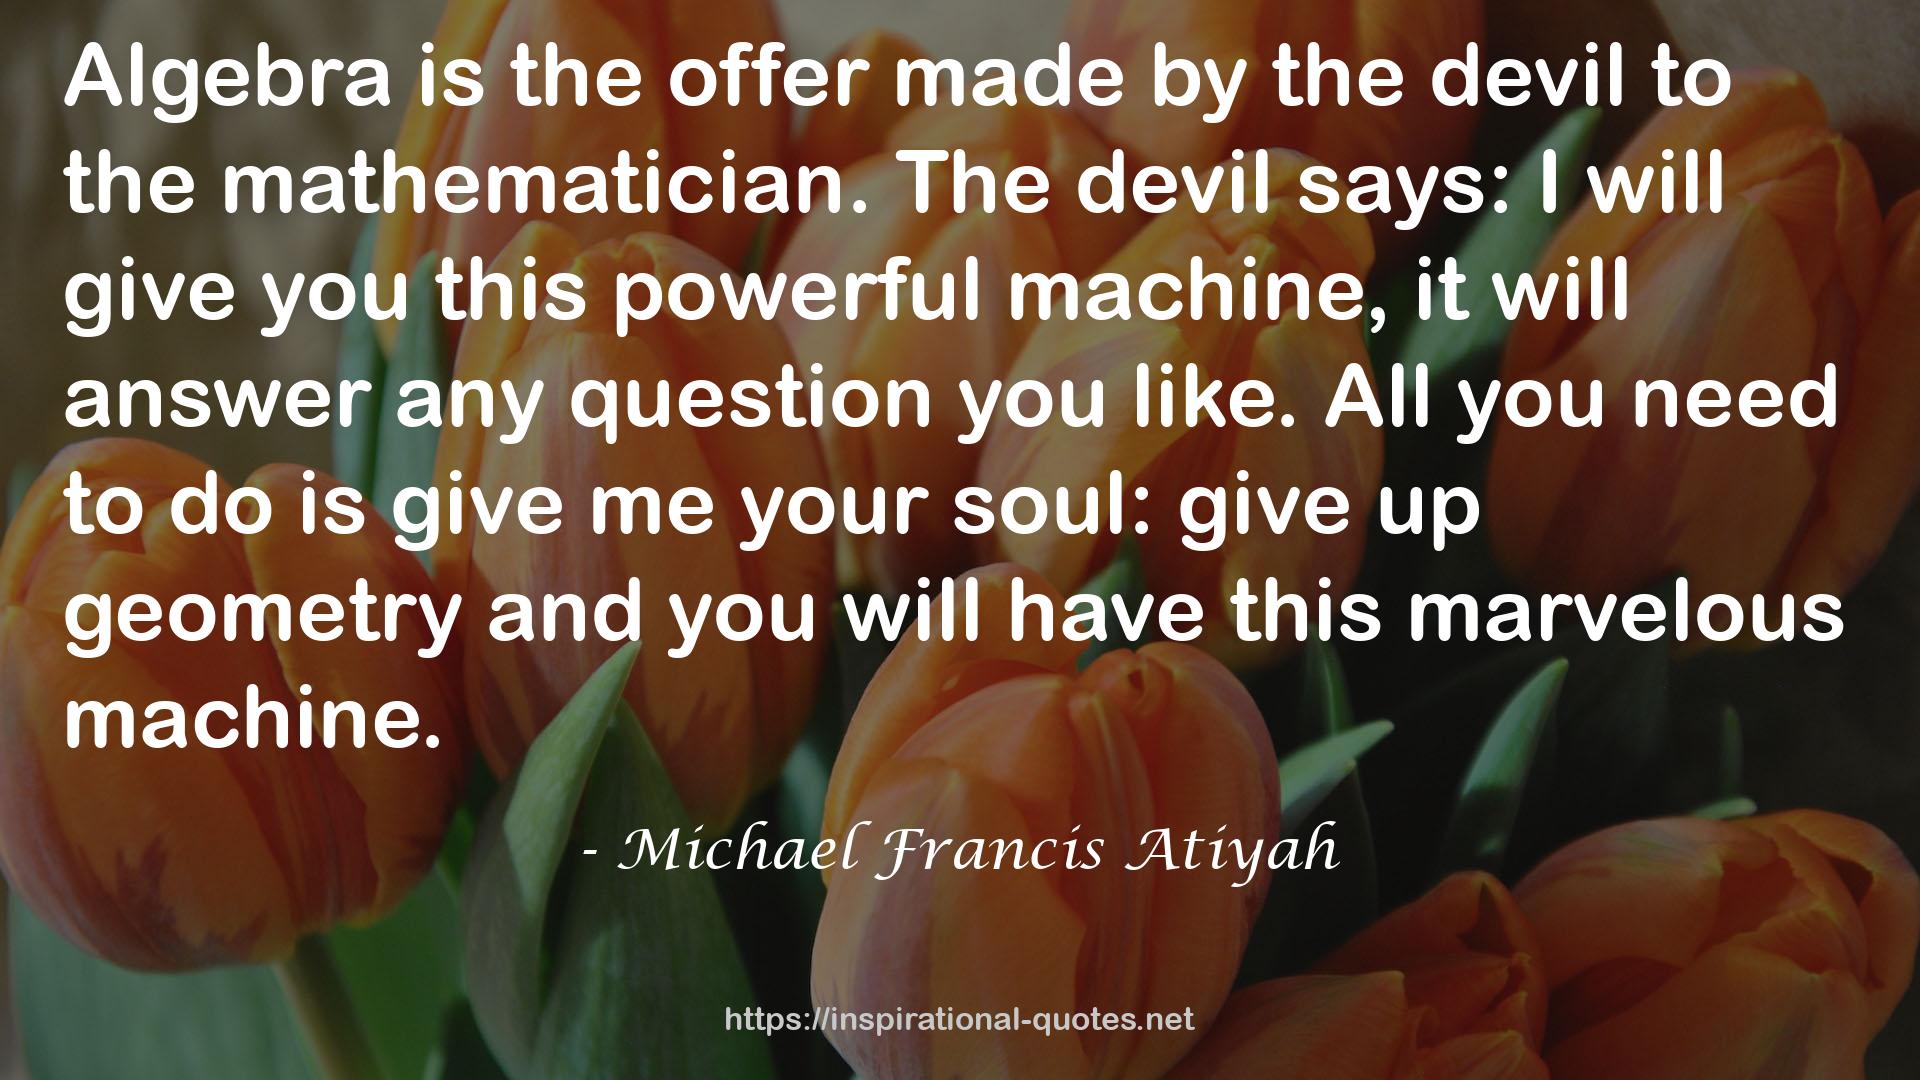 Michael Francis Atiyah QUOTES